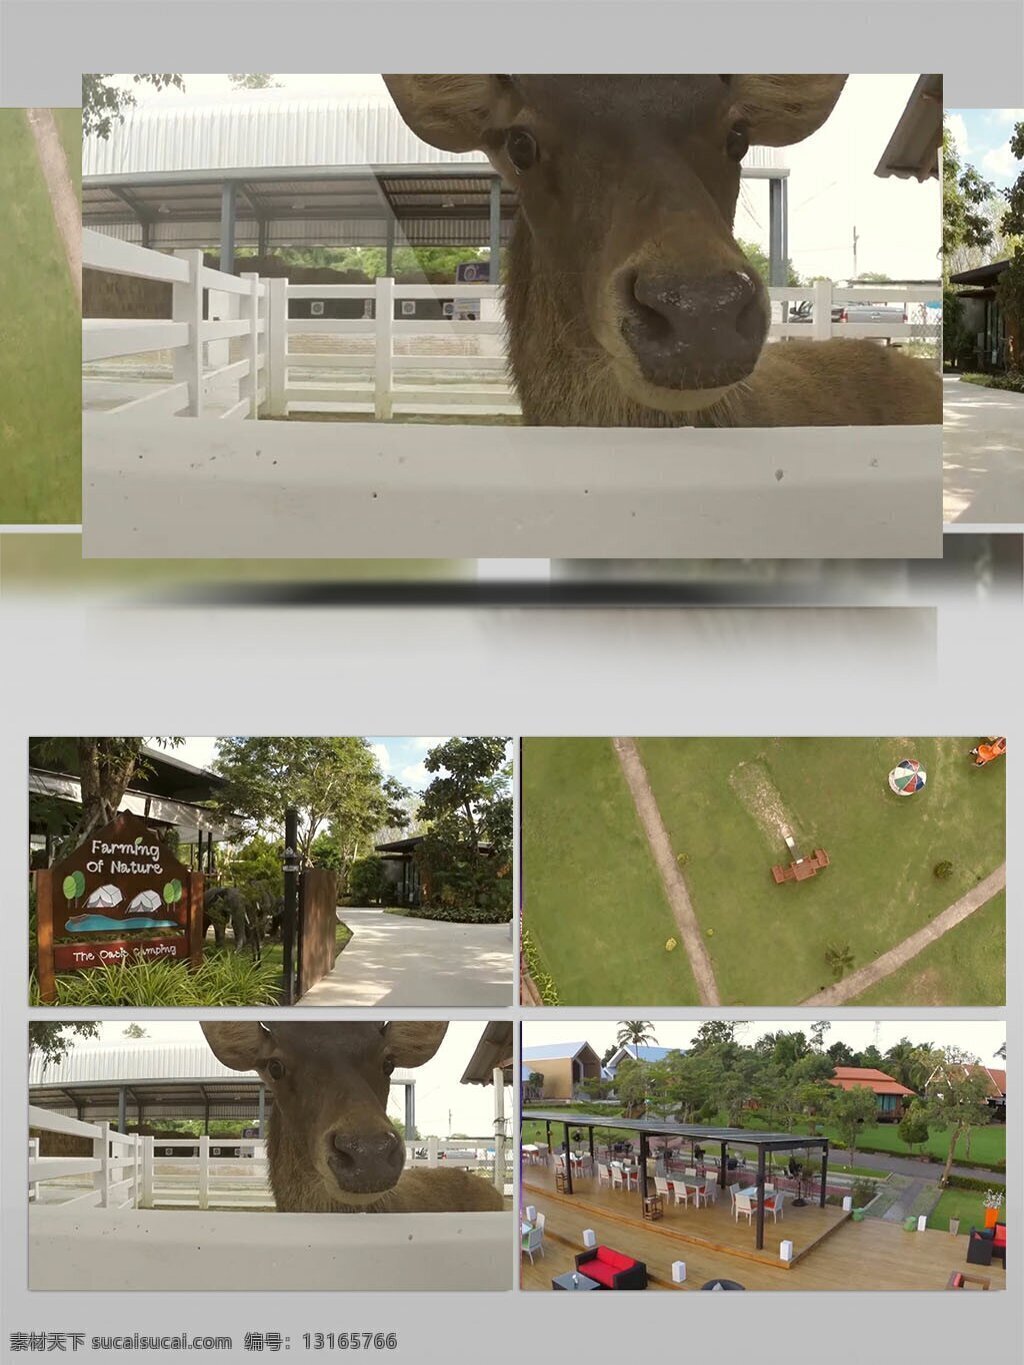 农庄 公园 动物 风景 实拍 视频 风景实拍 视频素材